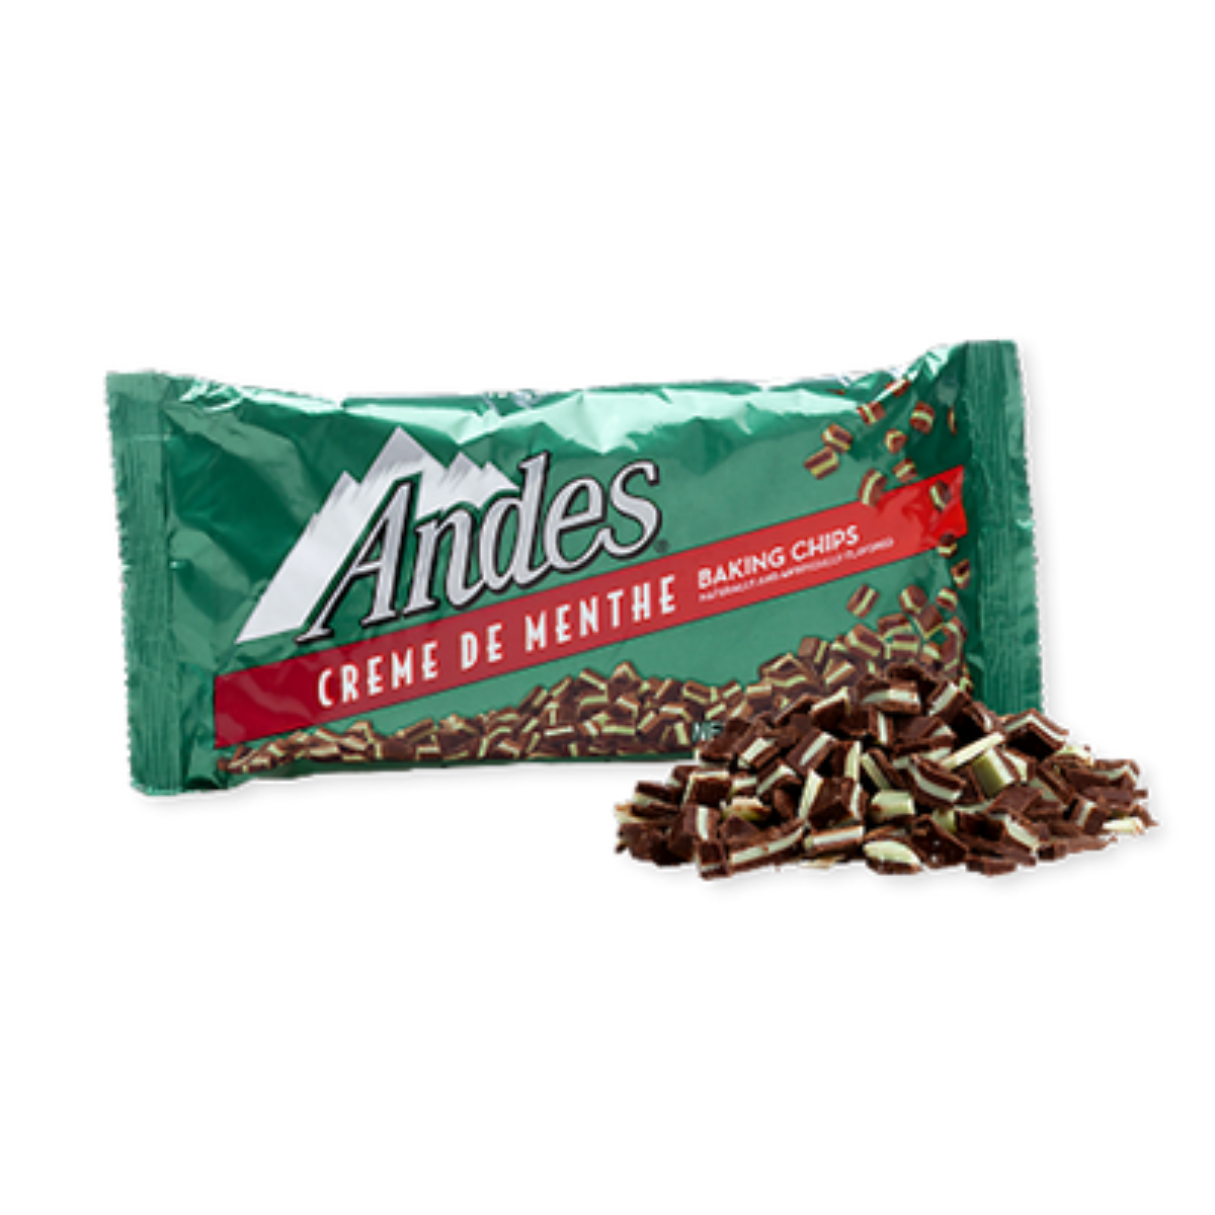 Andes Creme De Menthe Baking Chips 10oz - 12ct